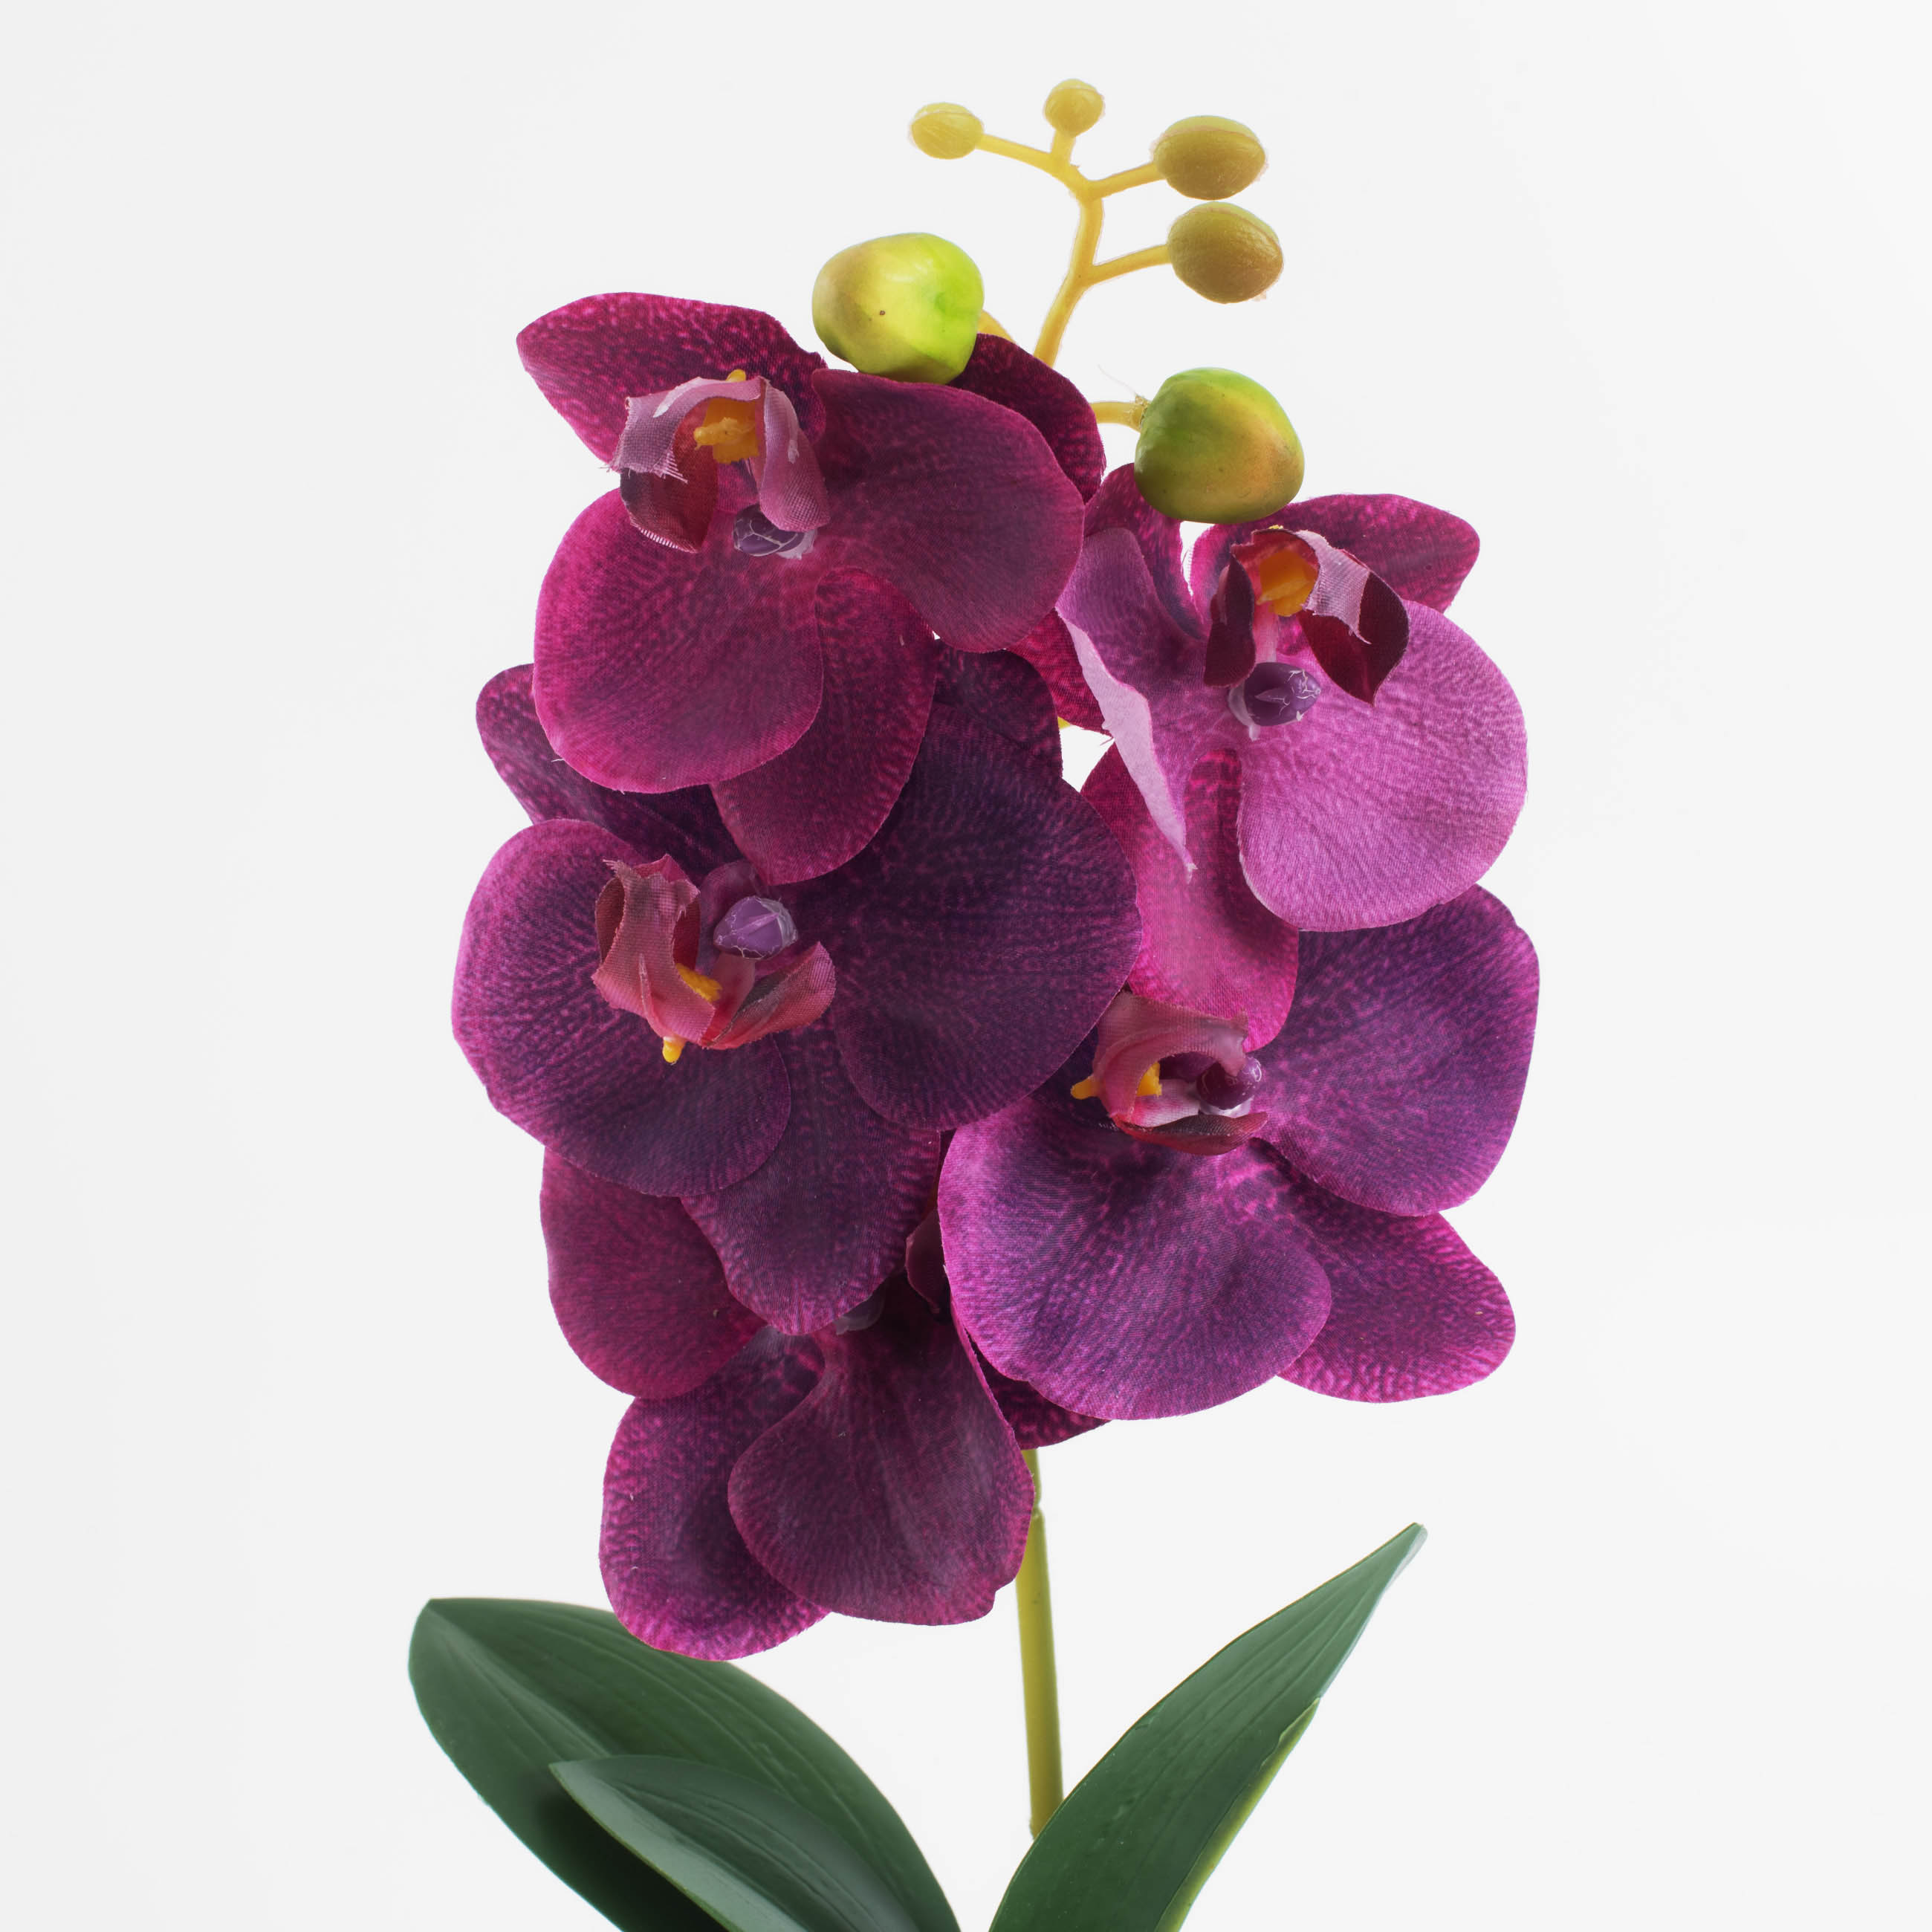 Растение искусственное, 35 см, в горшке, полиэстер/керамика, Розовая орхидея, Orchid